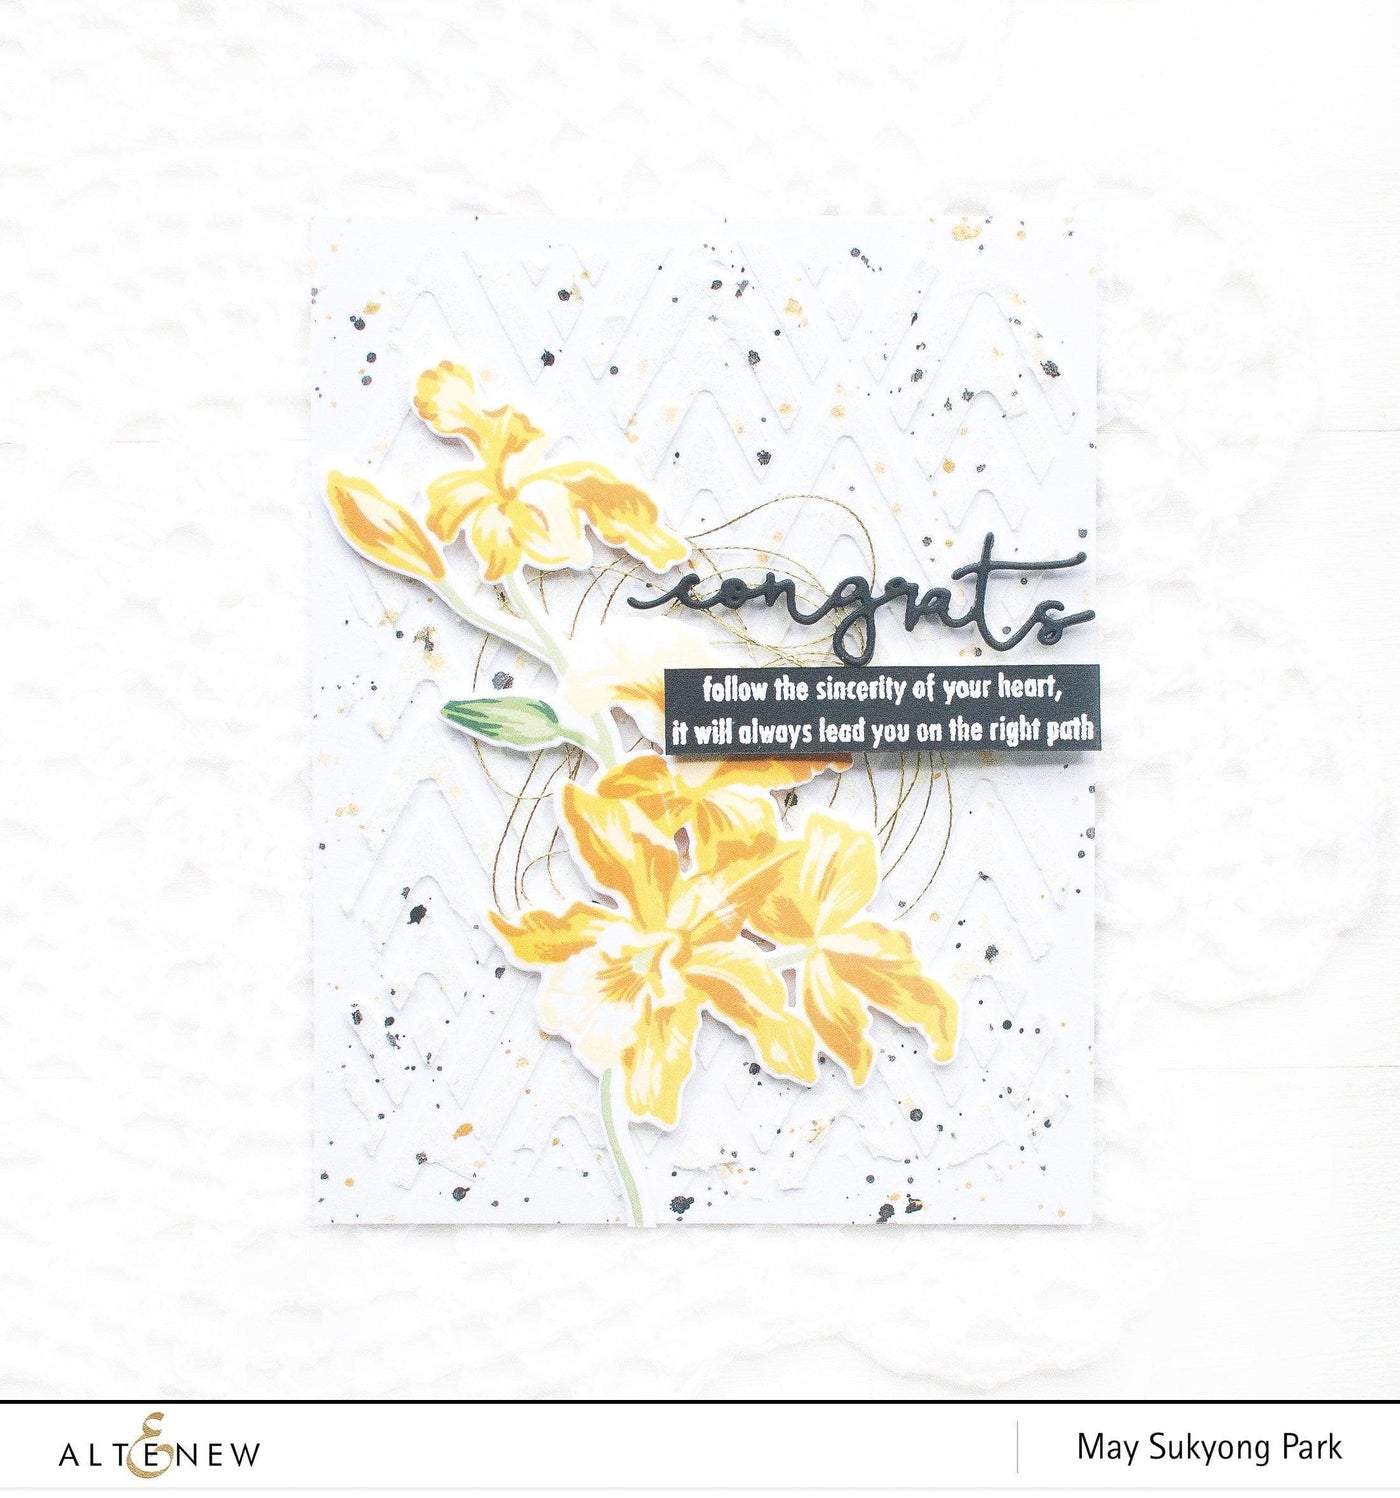 Altenew Build-A-Flower Set Build-A-Flower: Cattleya Layering Stamp & Die Set